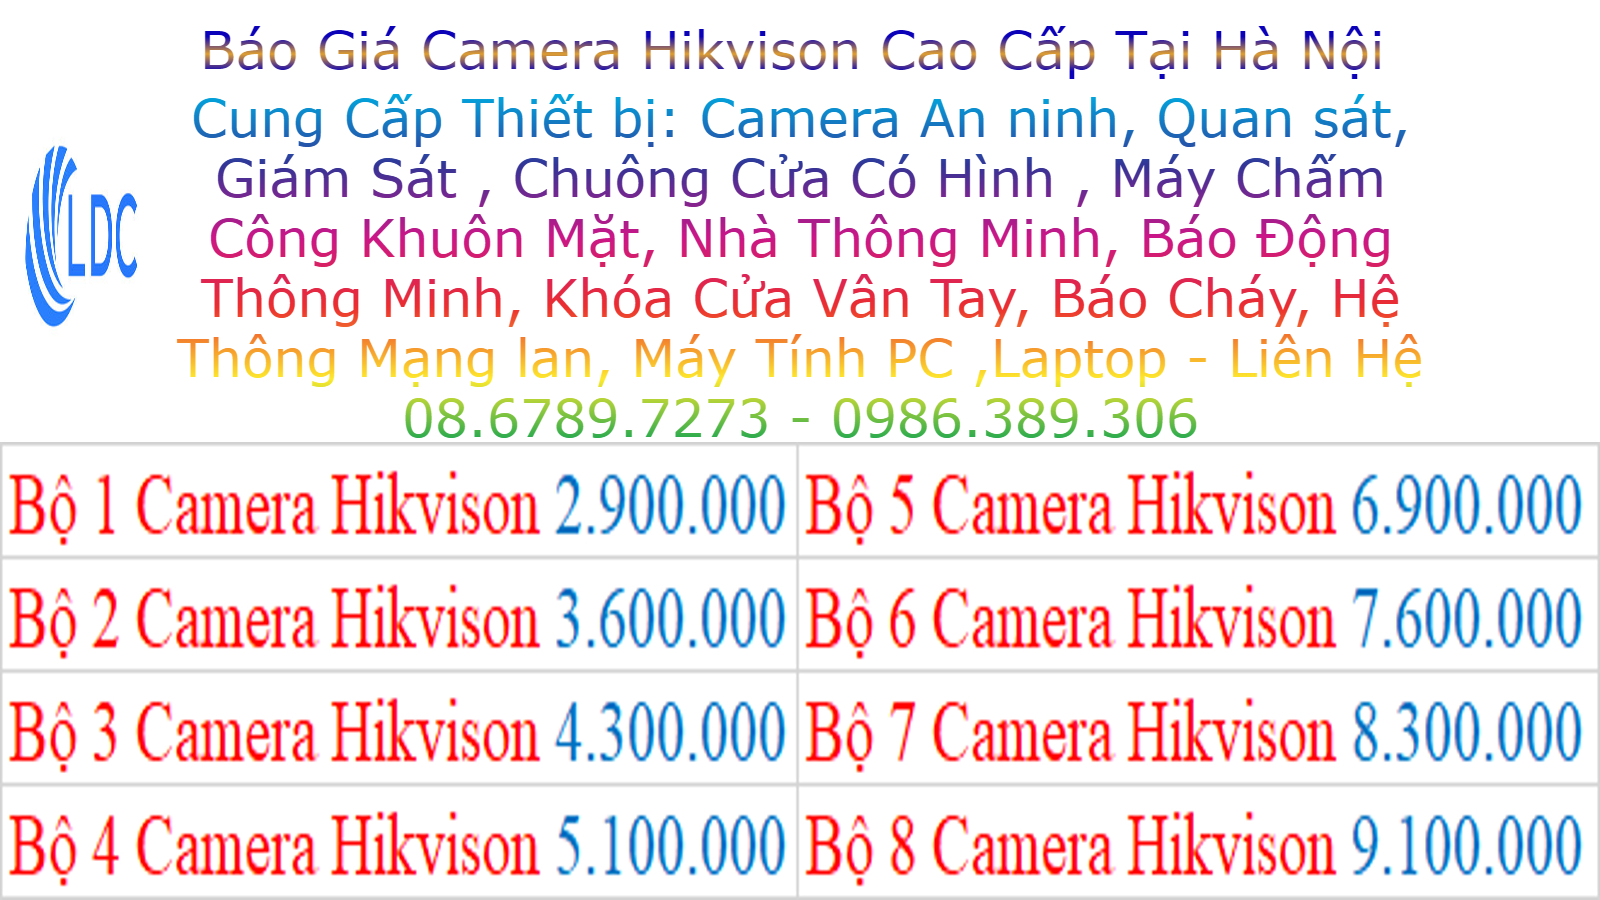 Lắp Đặt Camera Hikivison Phan Trong Tuệ Thanh Trì